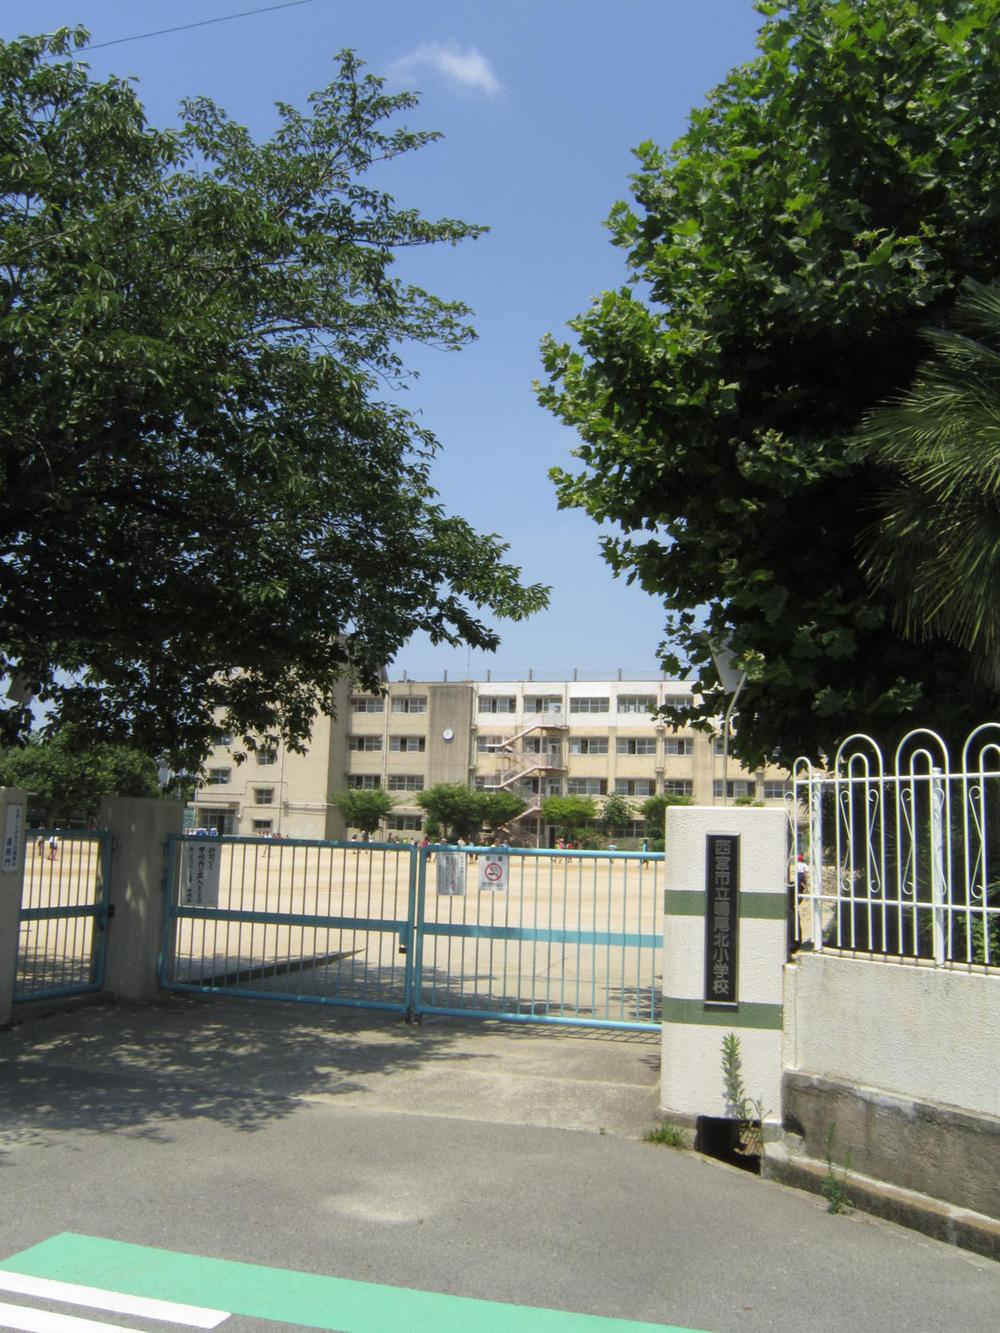 Primary school. 653m to Nishinomiya Municipal Naruo North Elementary School